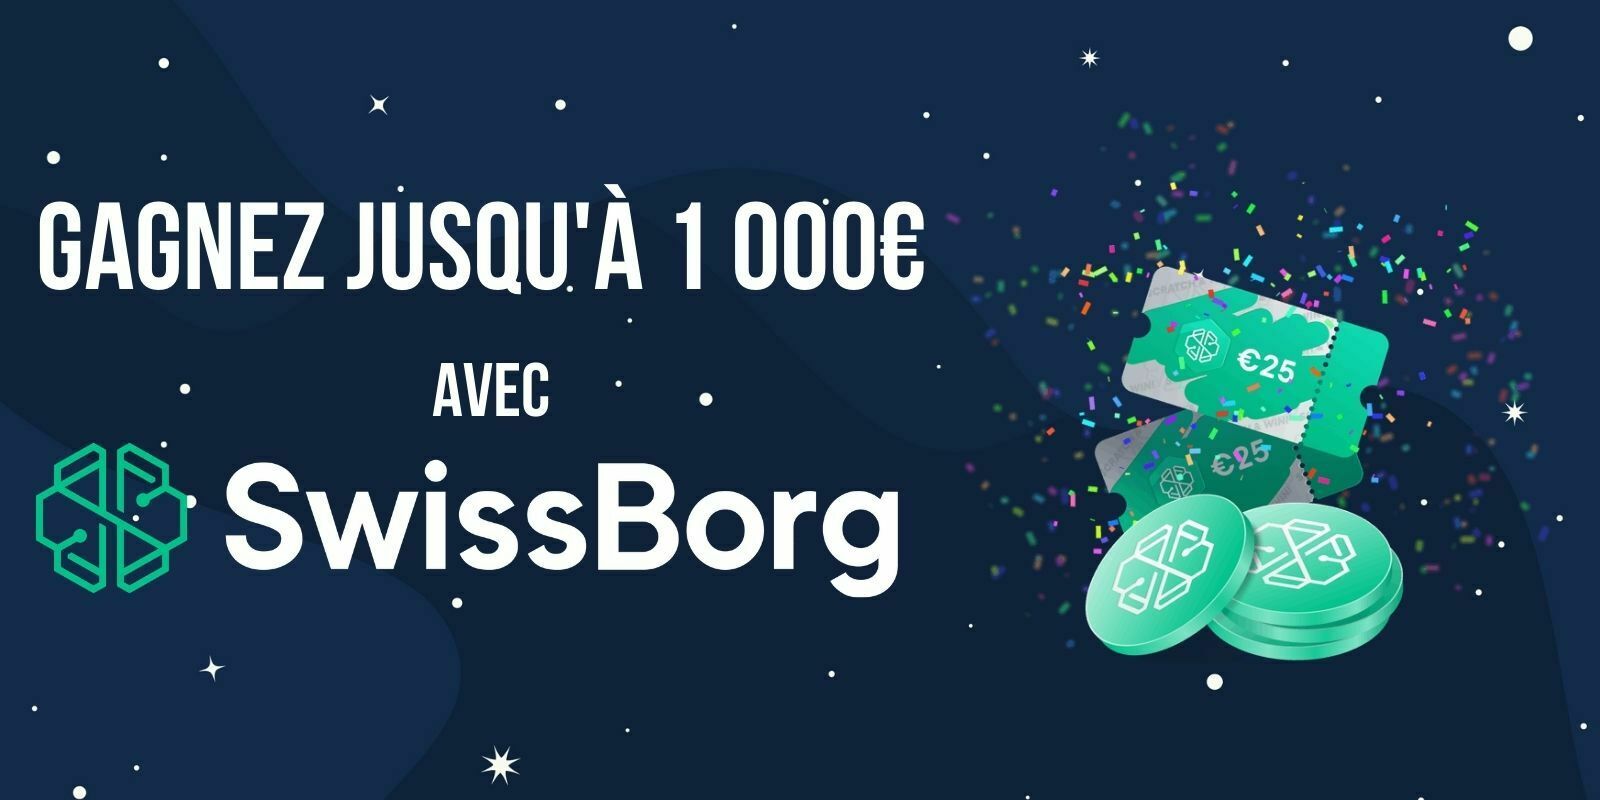 SwissBorg double son bonus de bienvenue, et vous fait gagner jusqu'à 1 000€ en CHSB